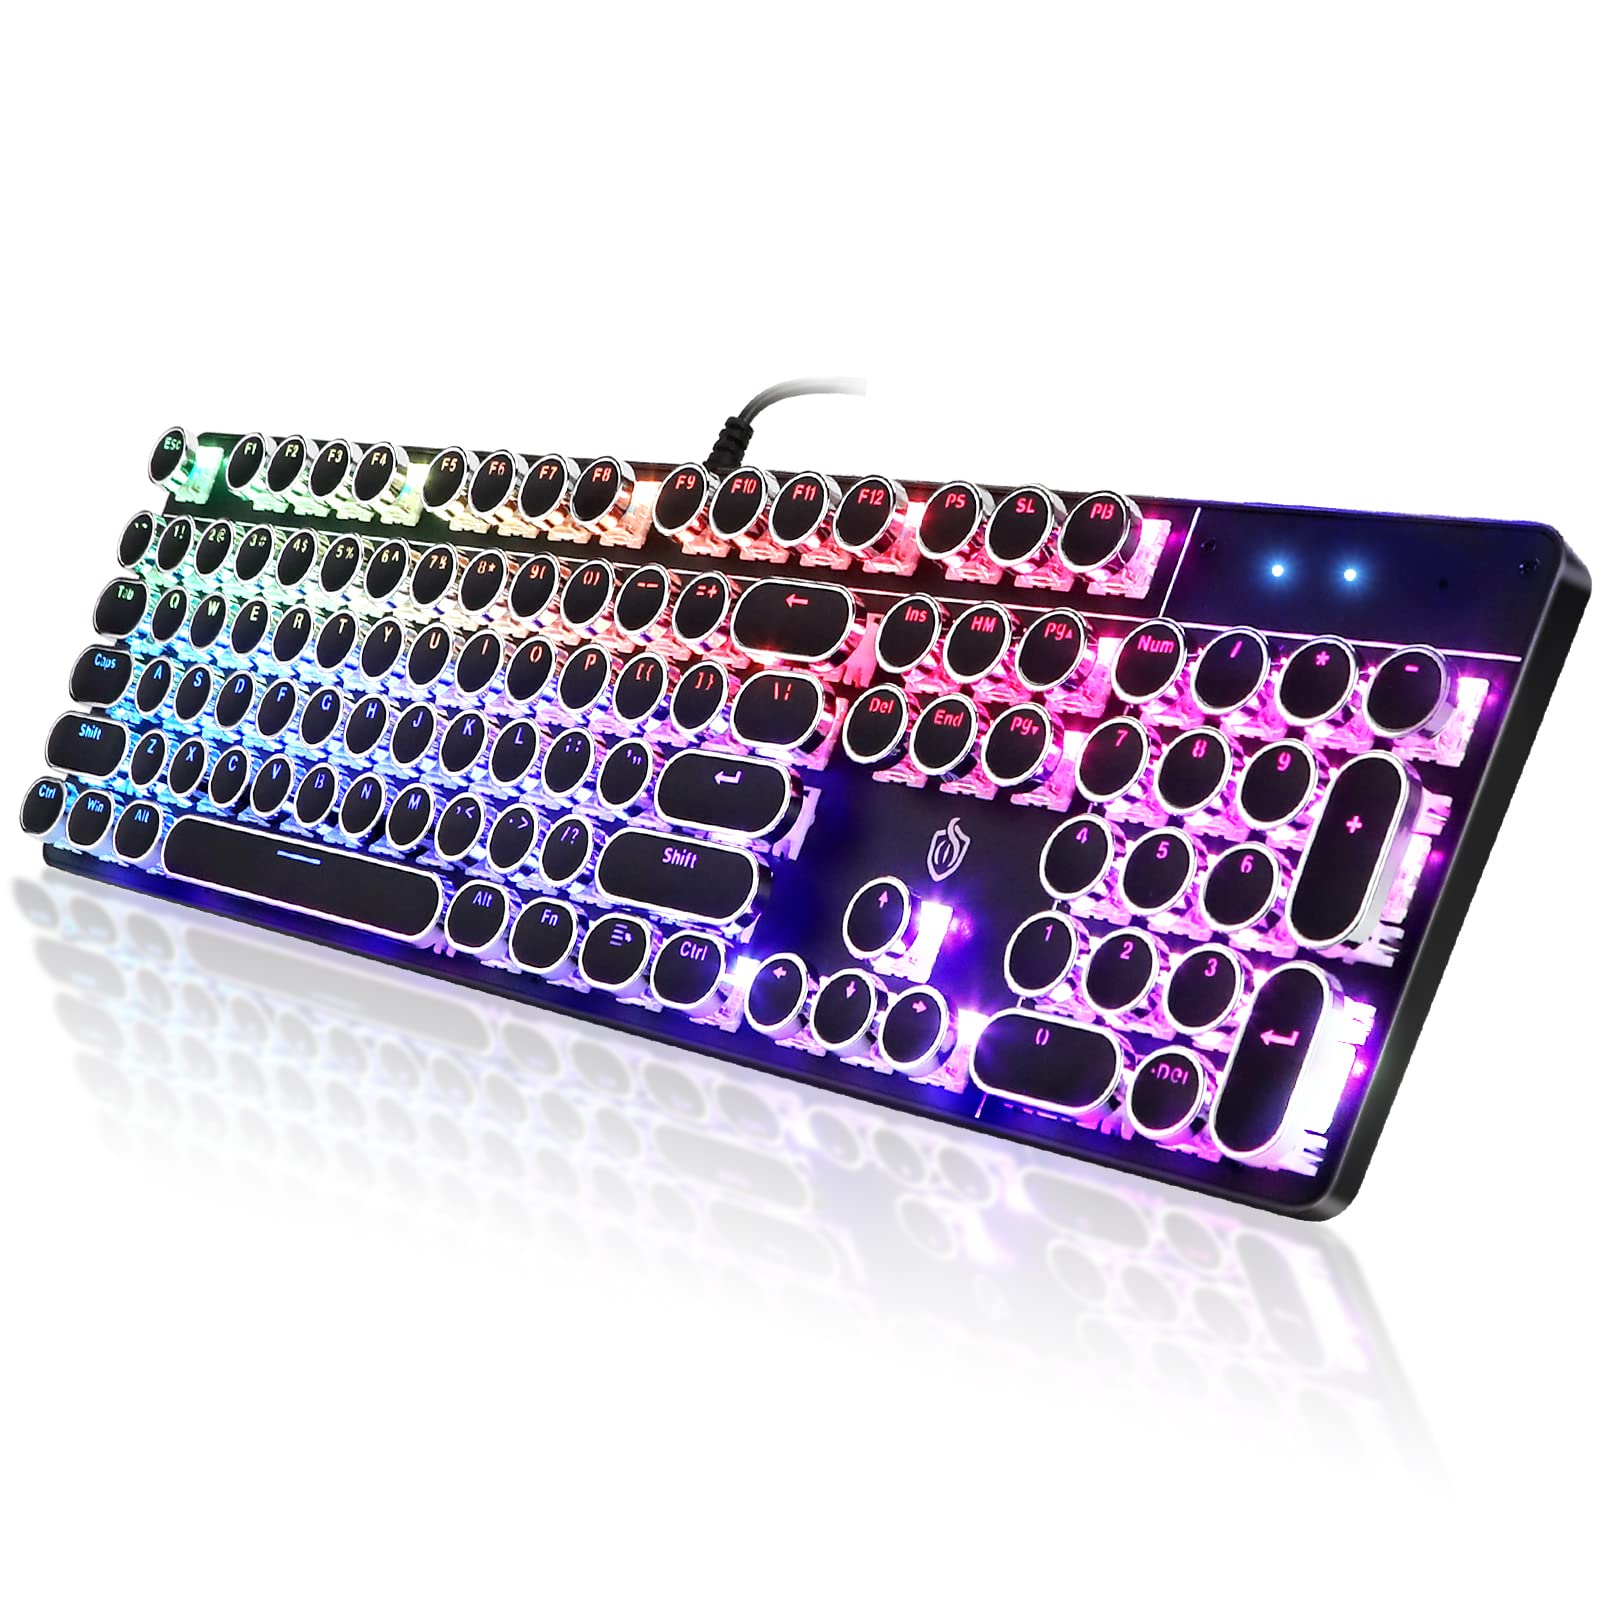 人気のファッションブランド！ TOMOKO Mechanical Gaming Keyboard, Water Resistant Gaming  Keyboard with Blue Switch for Gamers, An